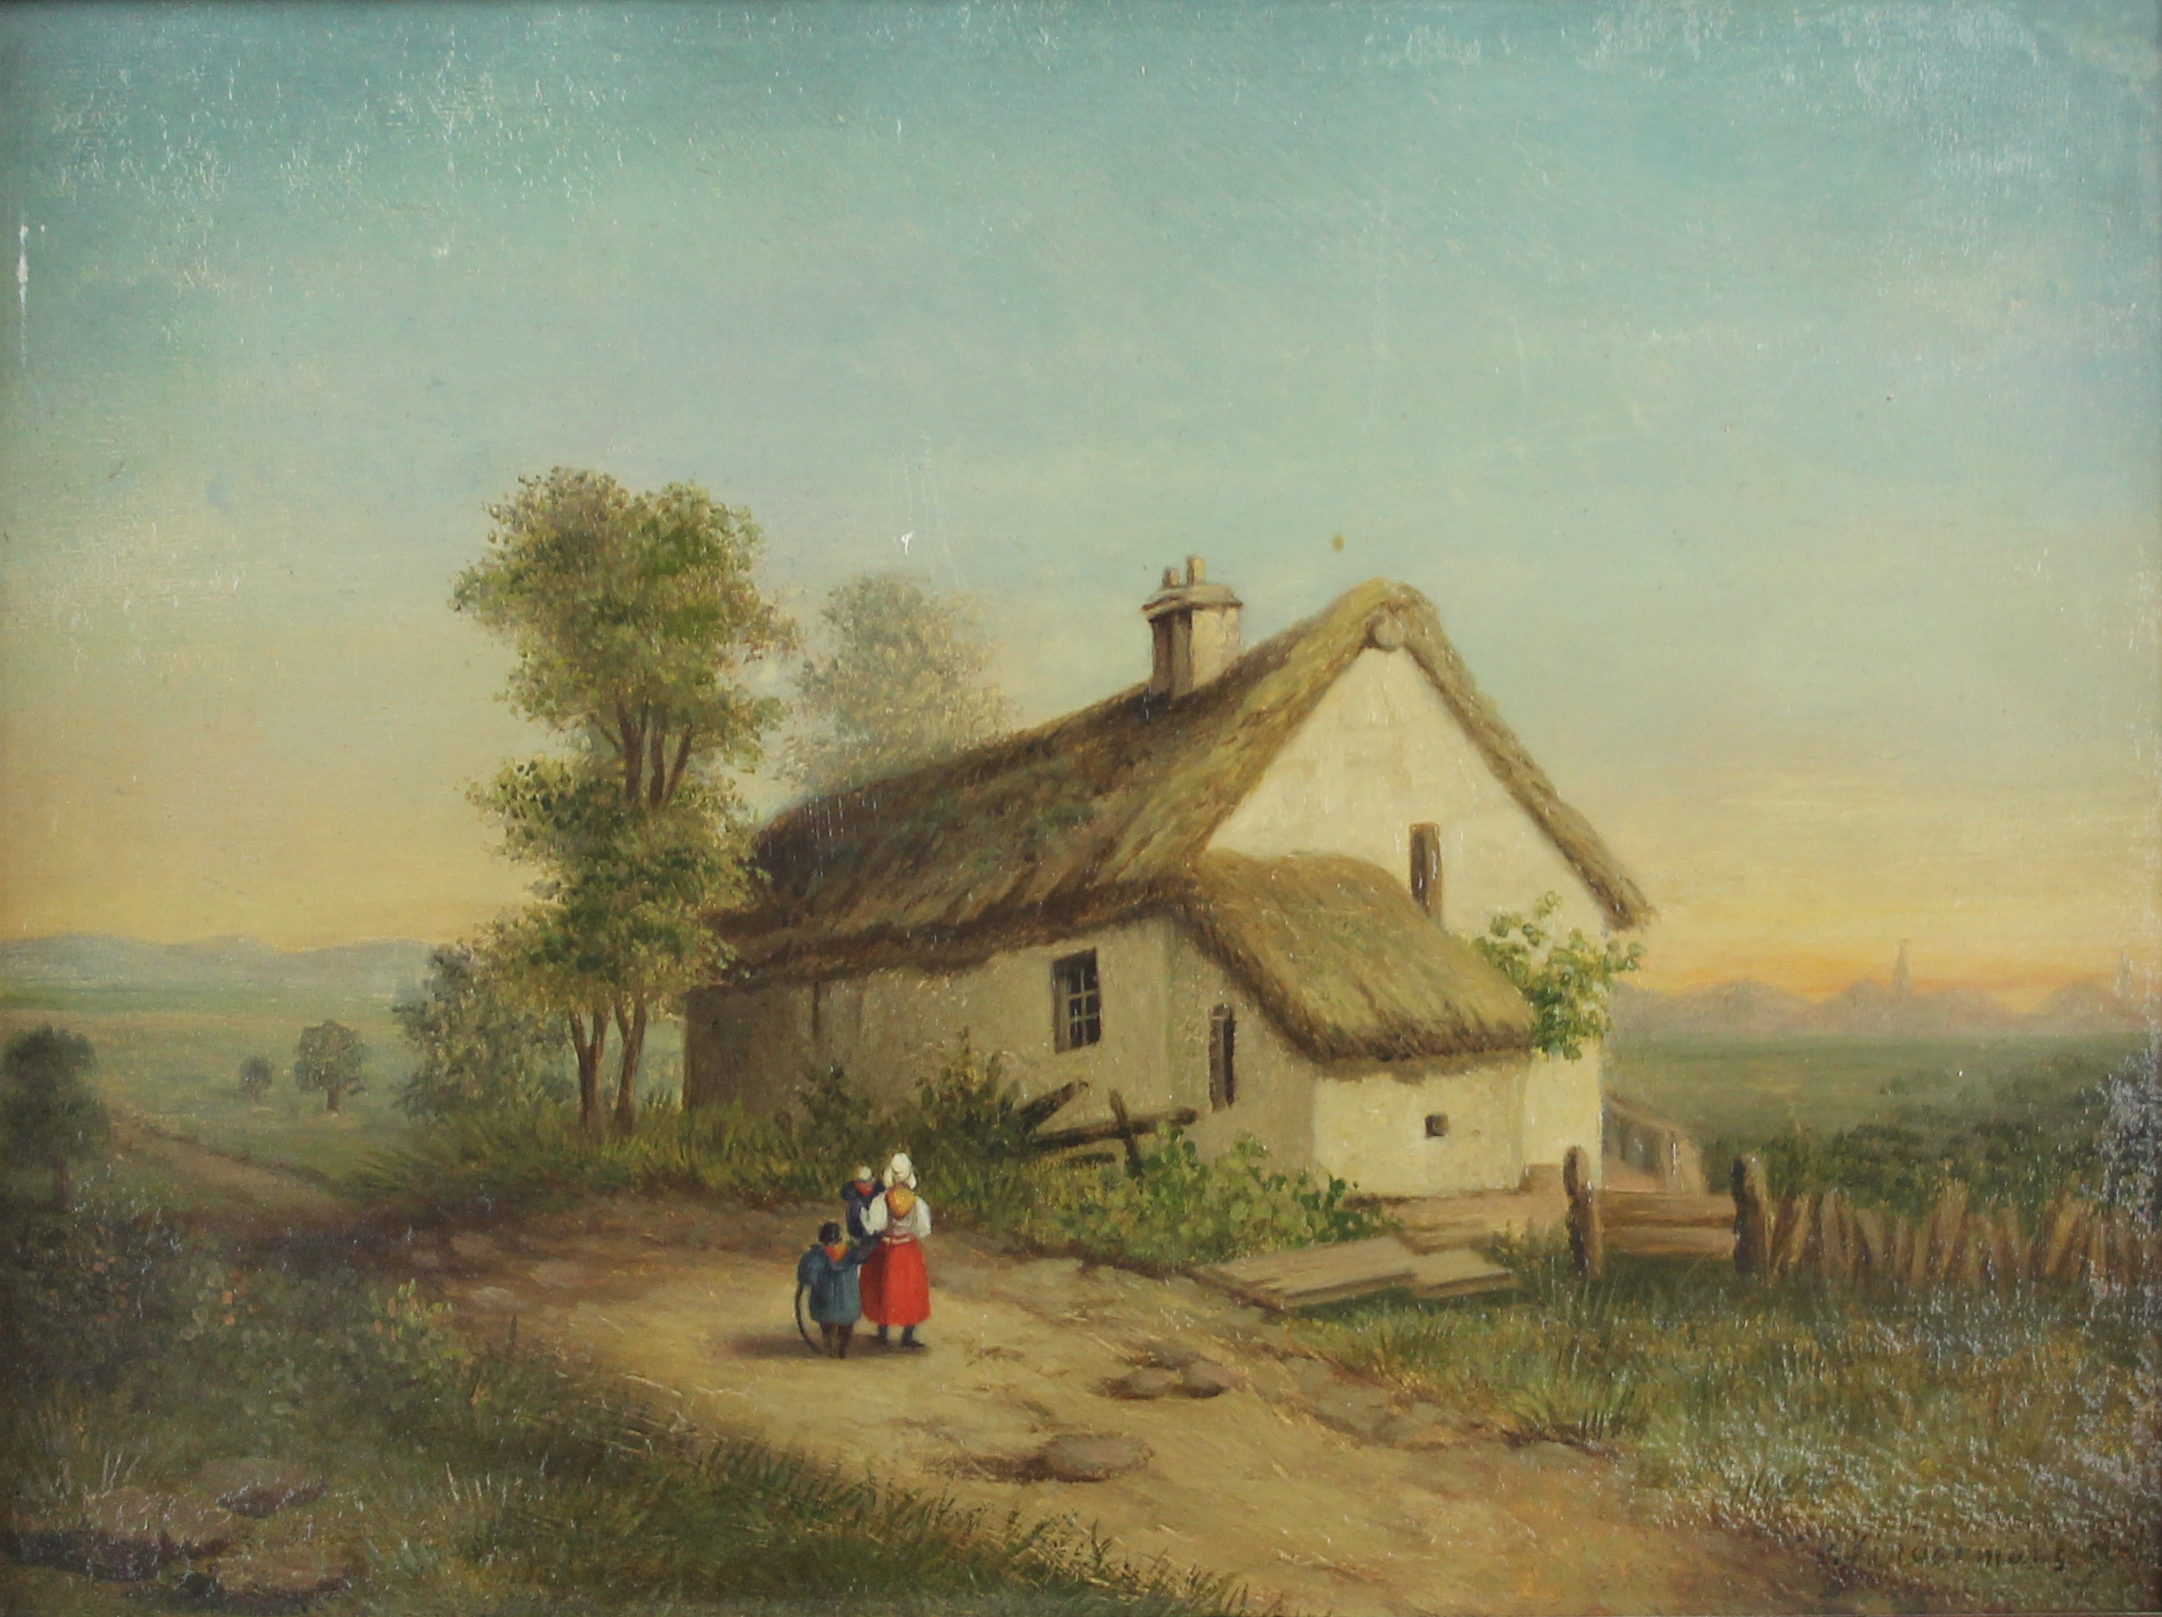 tableau La famille au cerceau  Kindermans Jean-Baptiste personnage,scène rurale,village  huile panneau 19e siècle